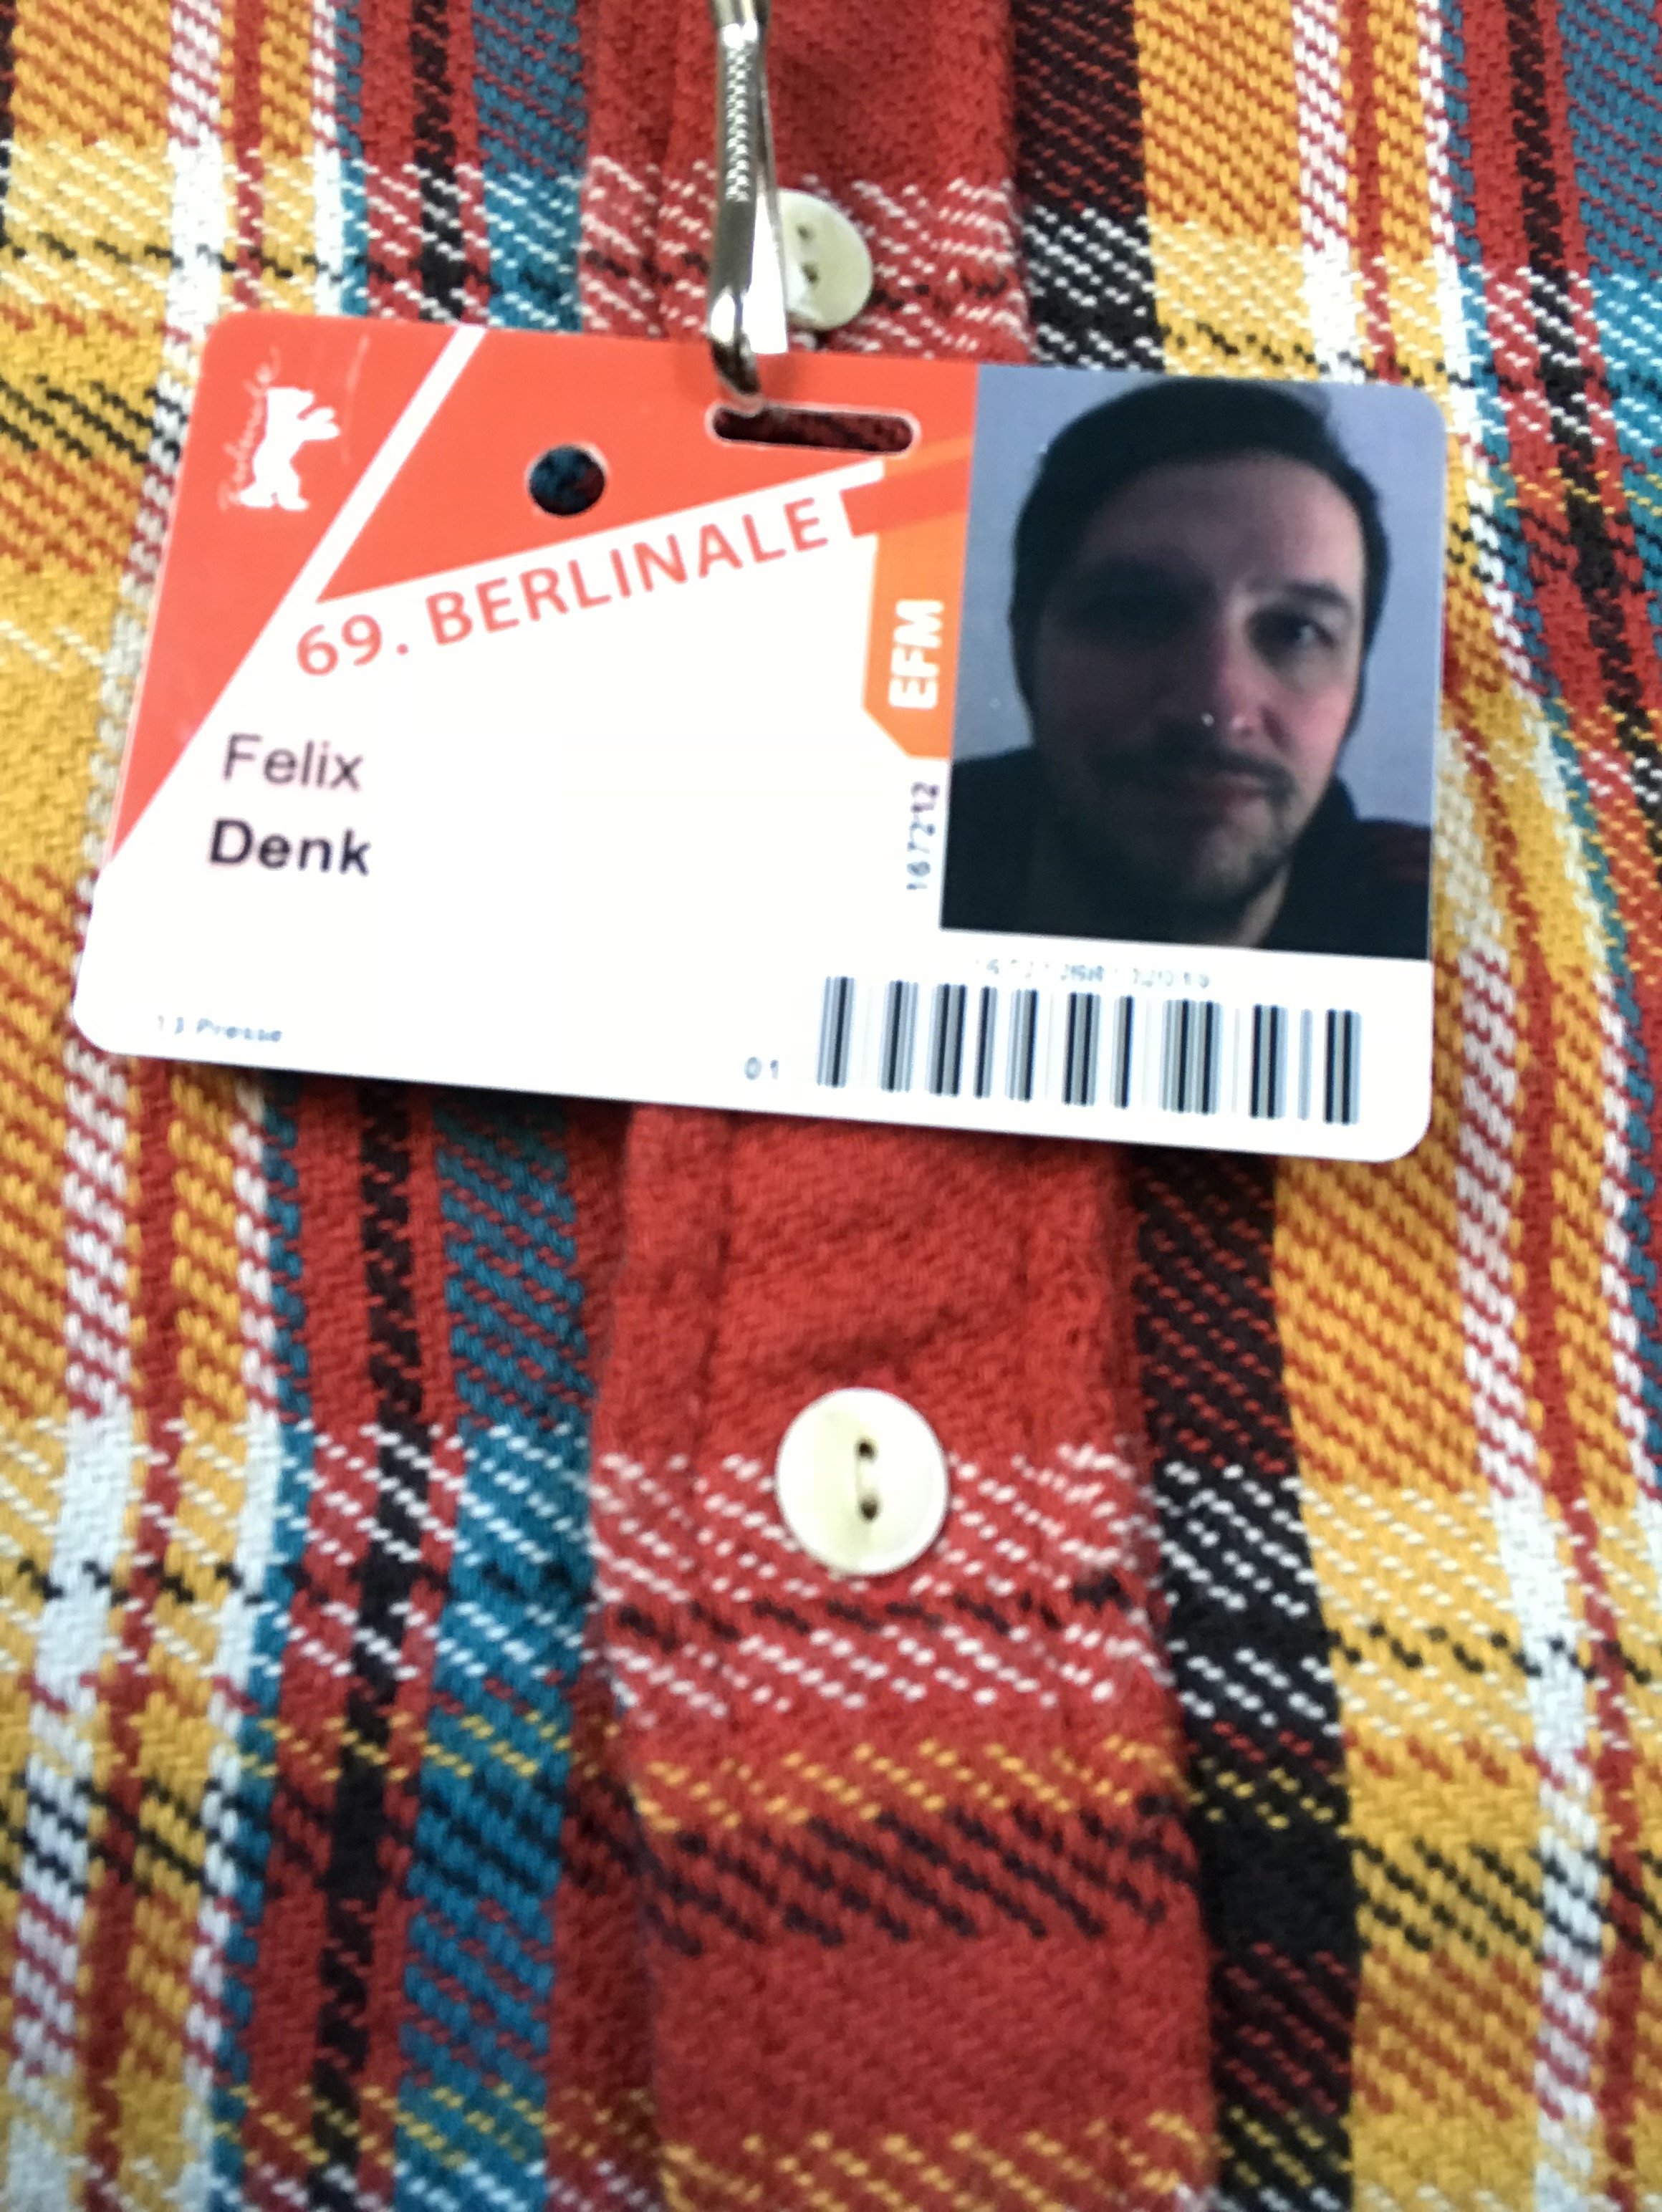 Berlinale Blogger Felix Denk